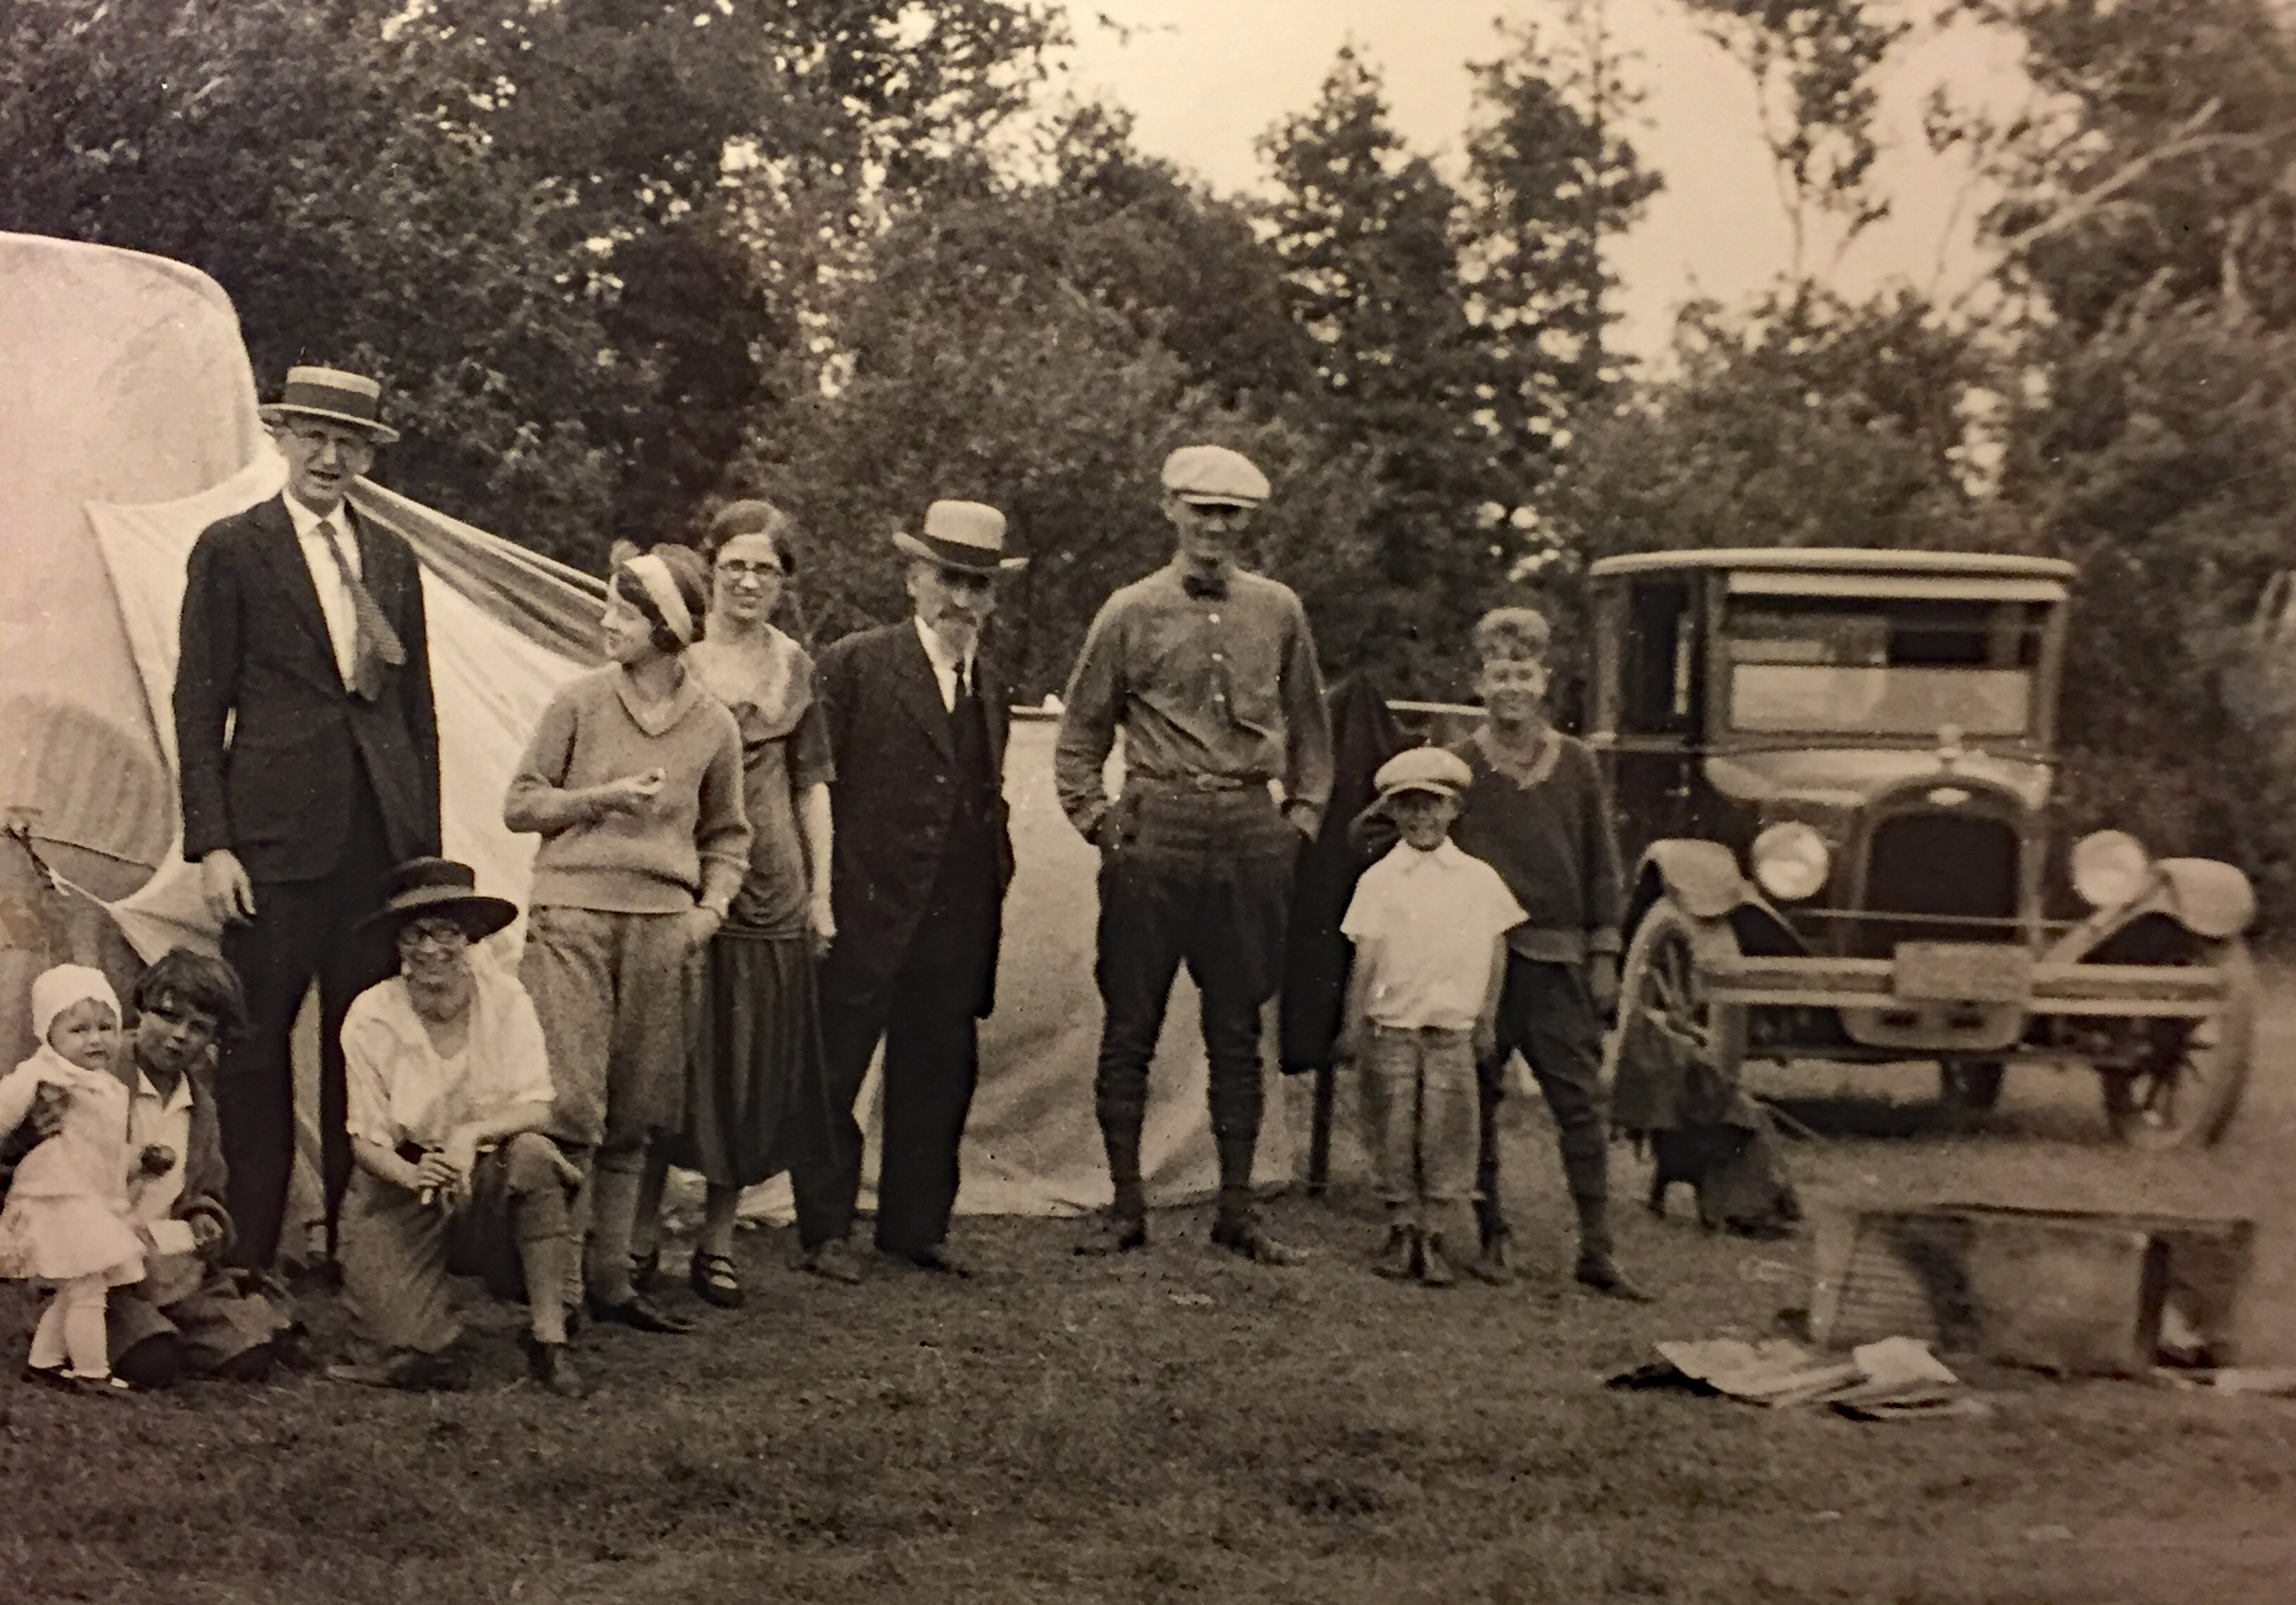 Camping at Peninsula State Park 1926